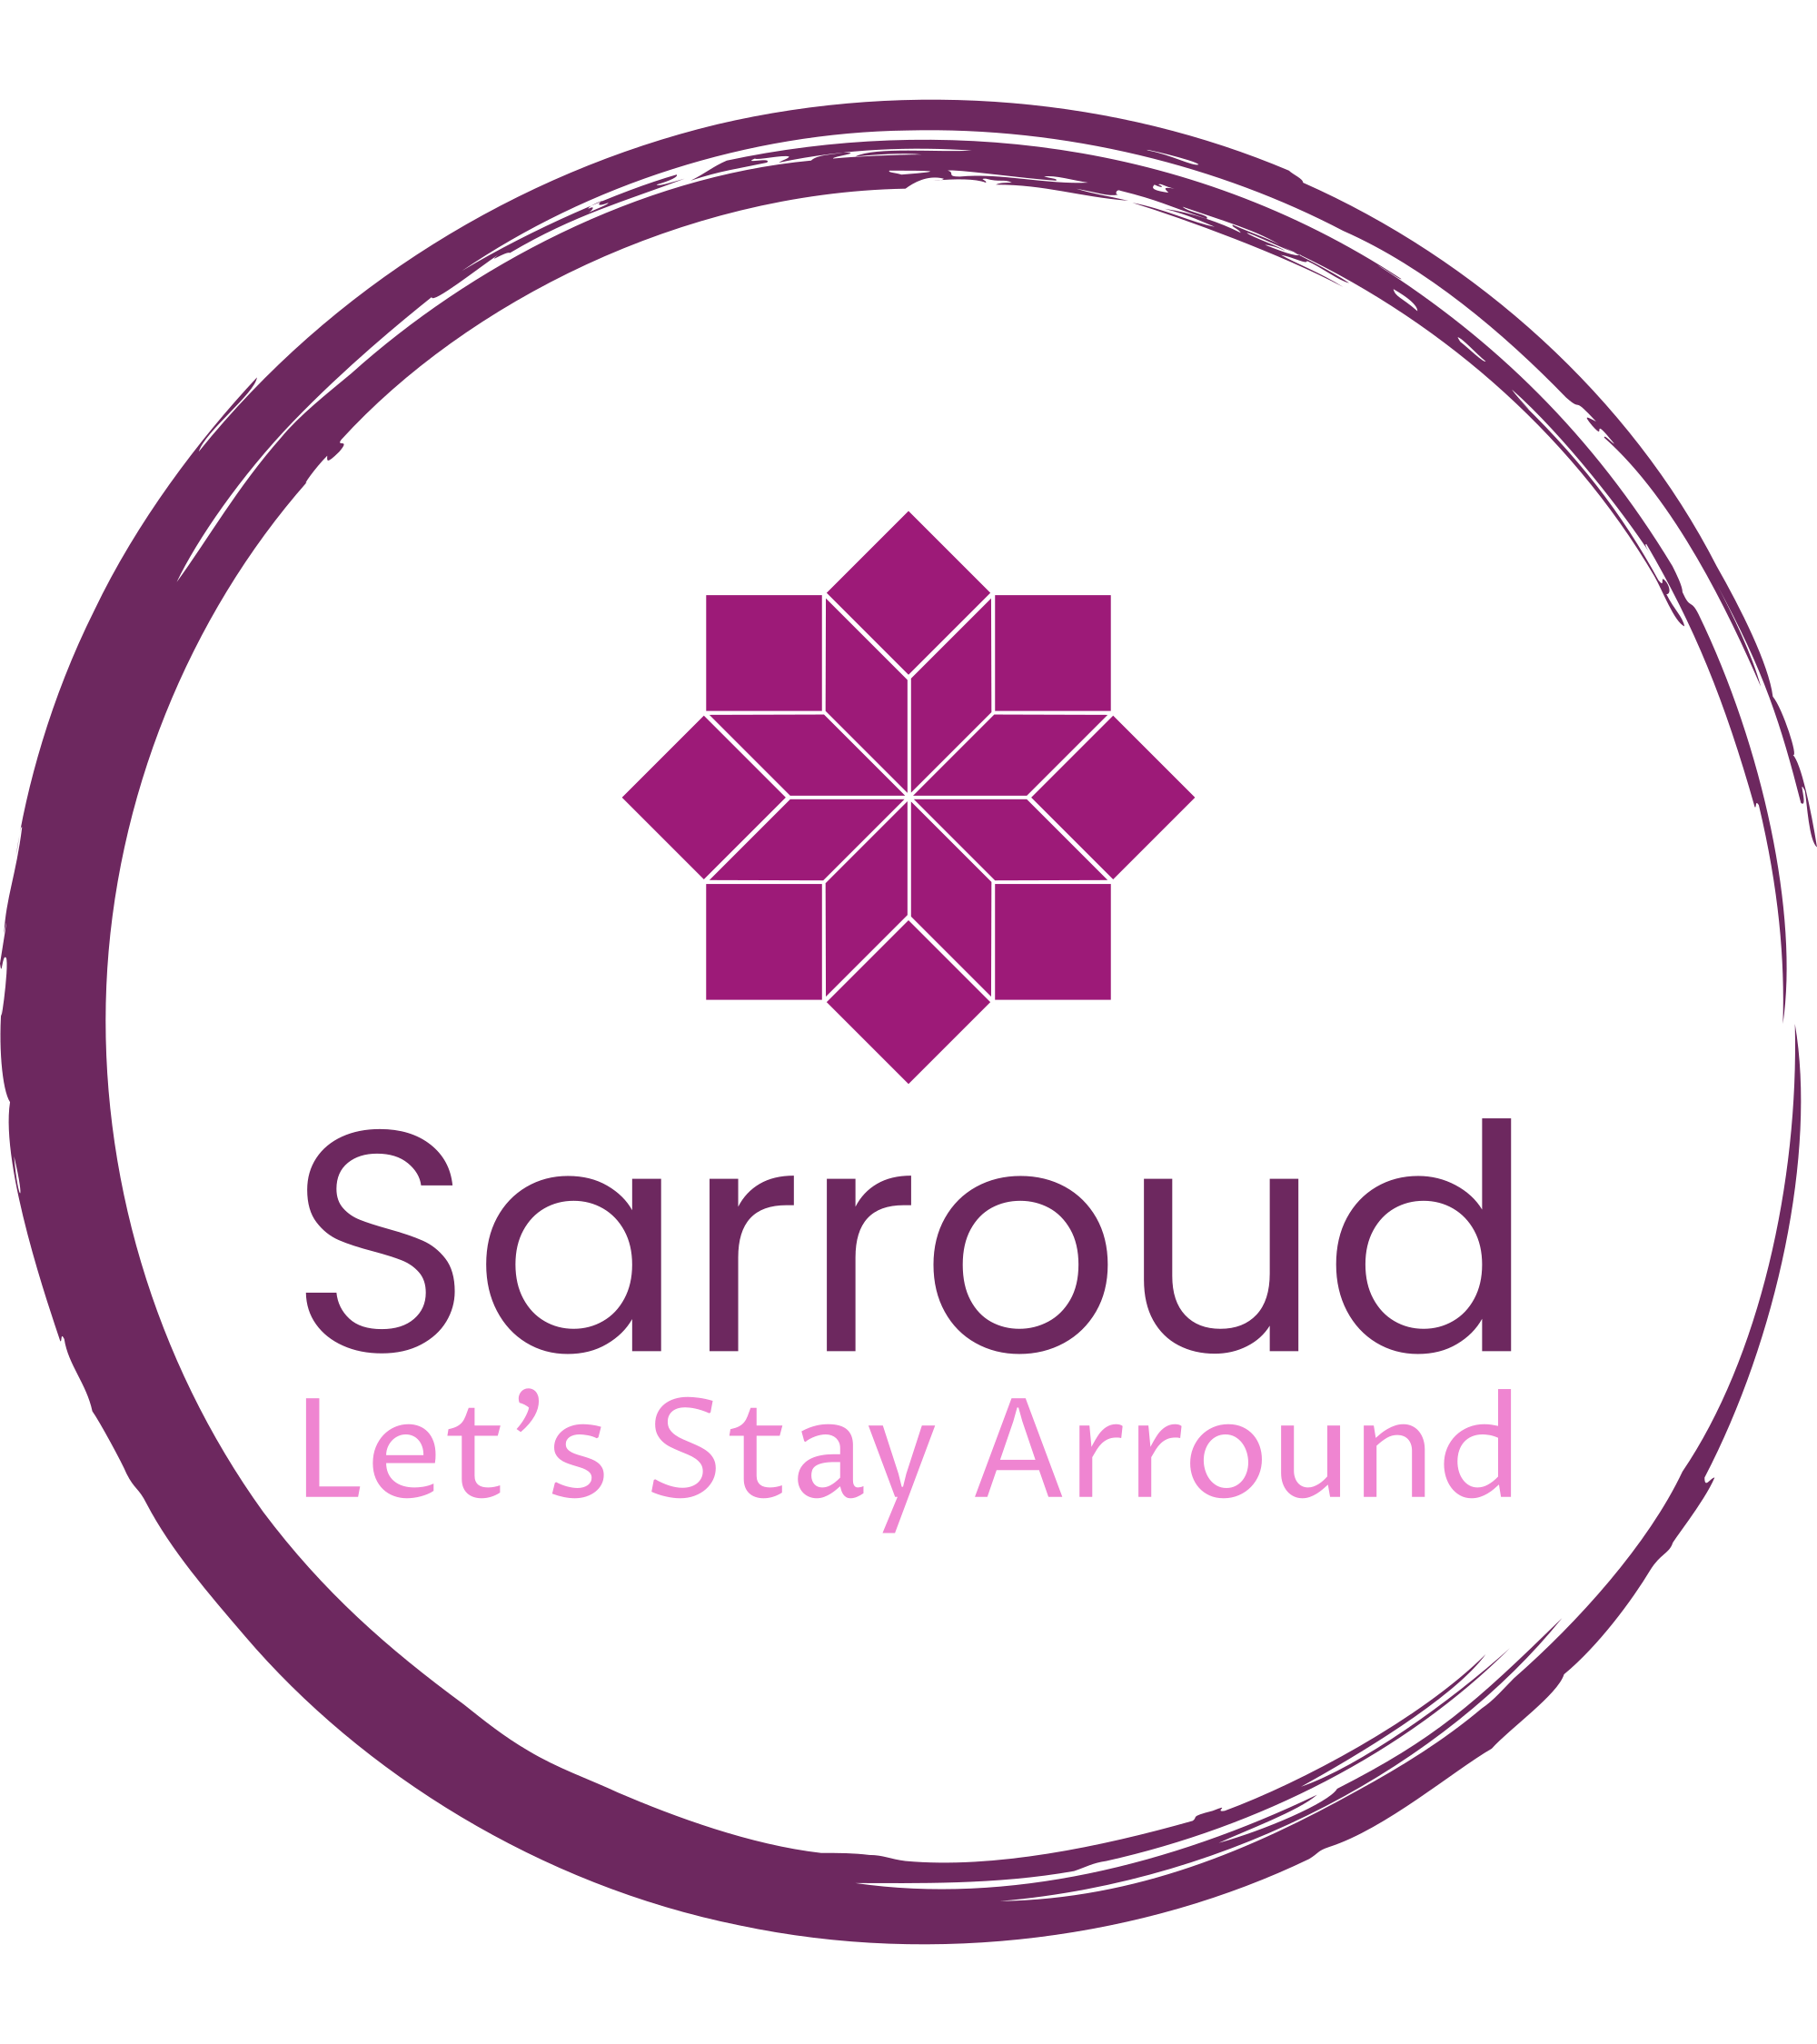 Sarroud